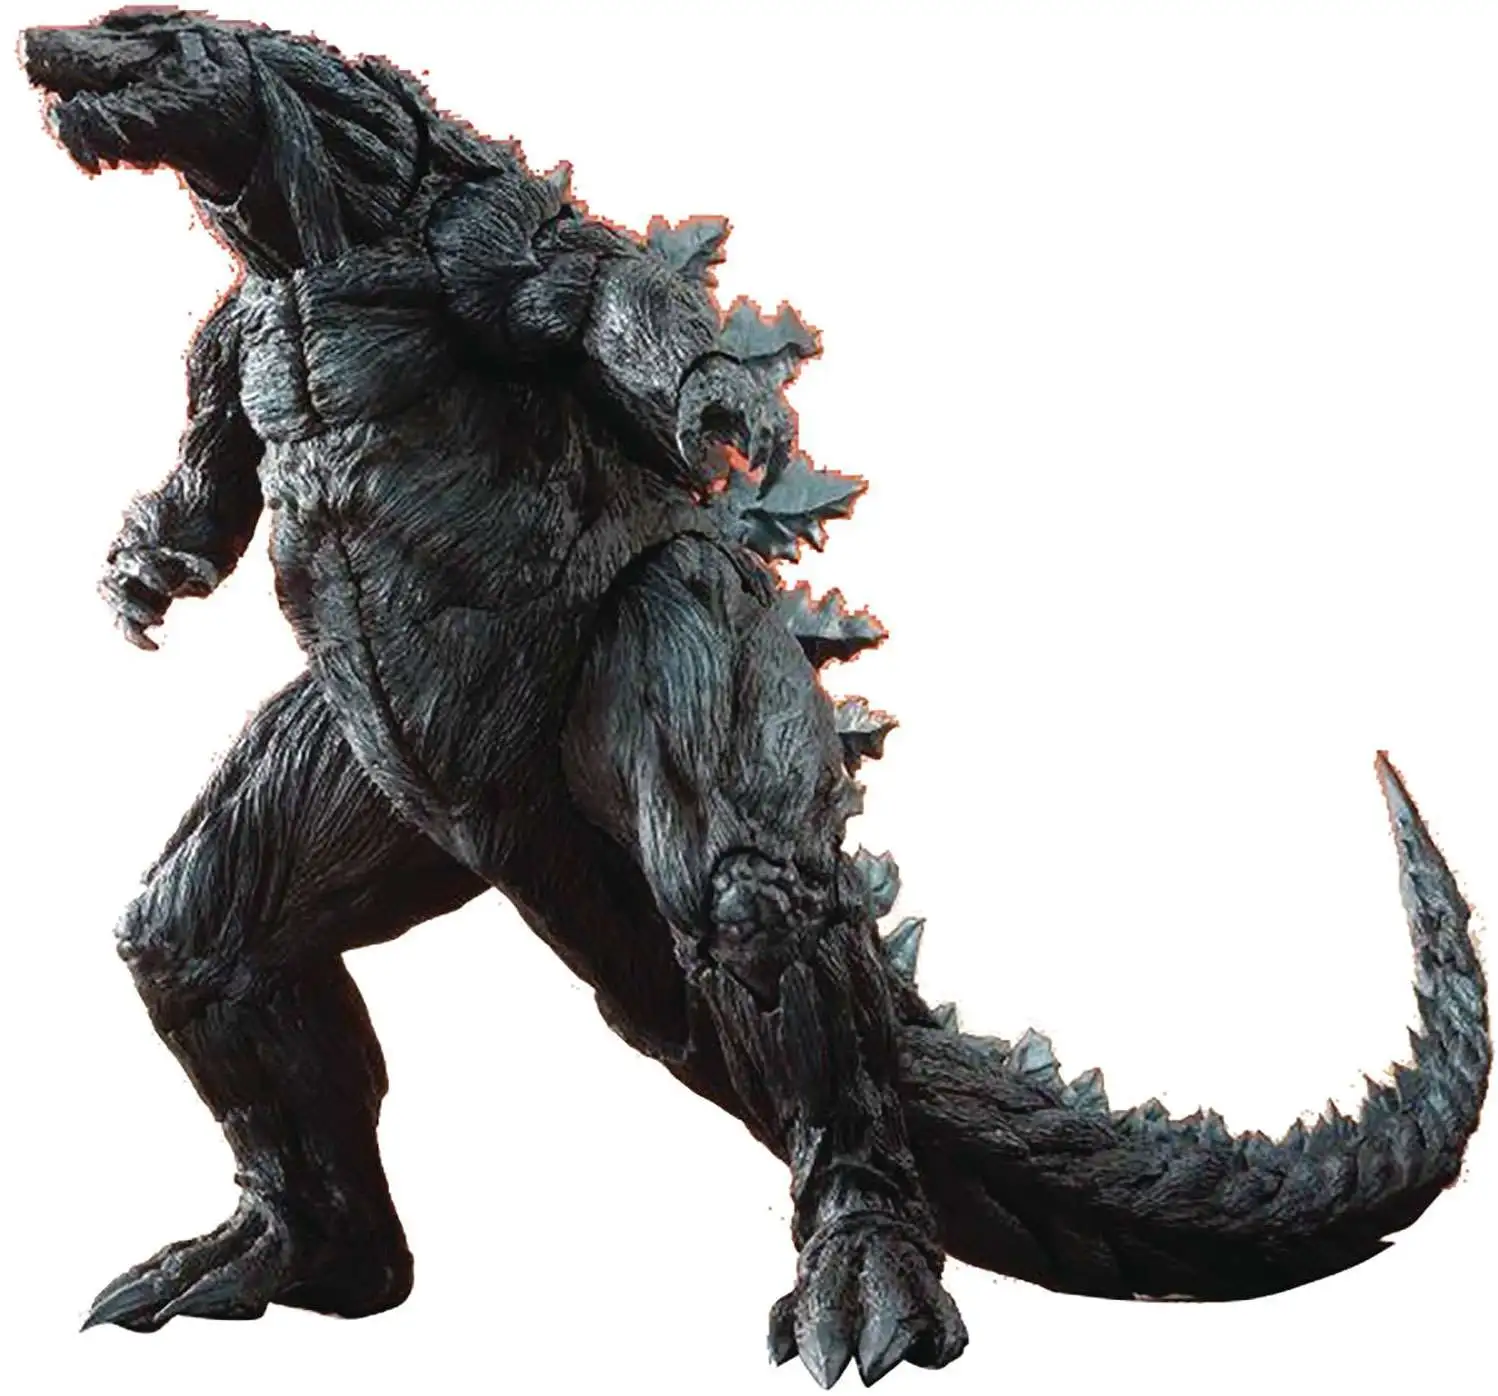 S. H. MonsterArts - Godzilla: Planet of the Monsters - Godzilla